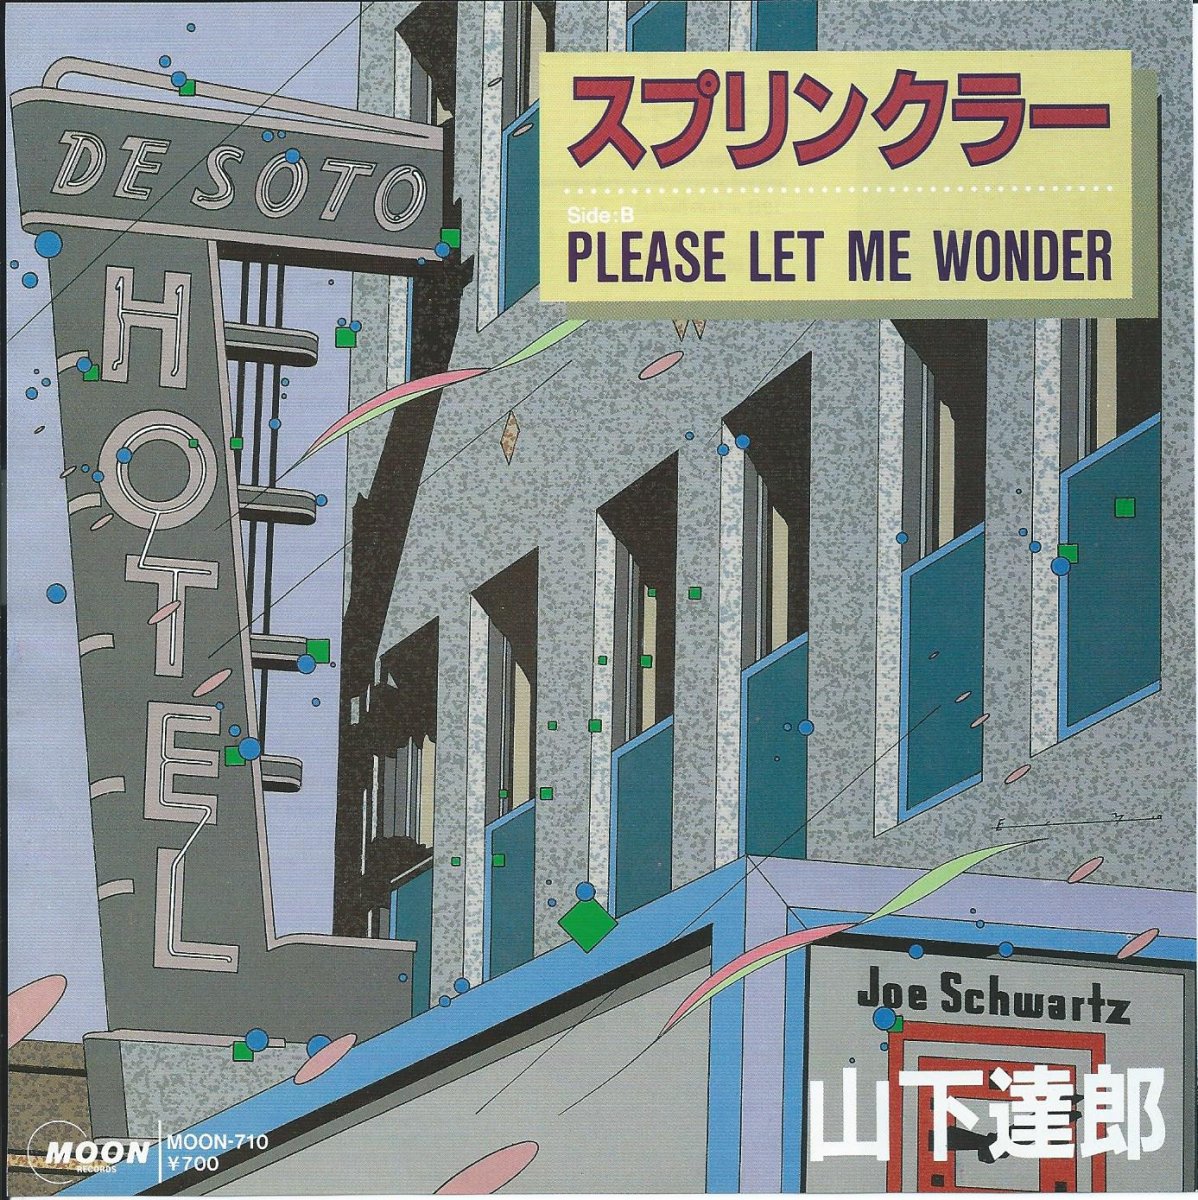 山下達郎 TATSURO YAMASHITA / スプリンクラー / PLEASE LET ME WONDER (7